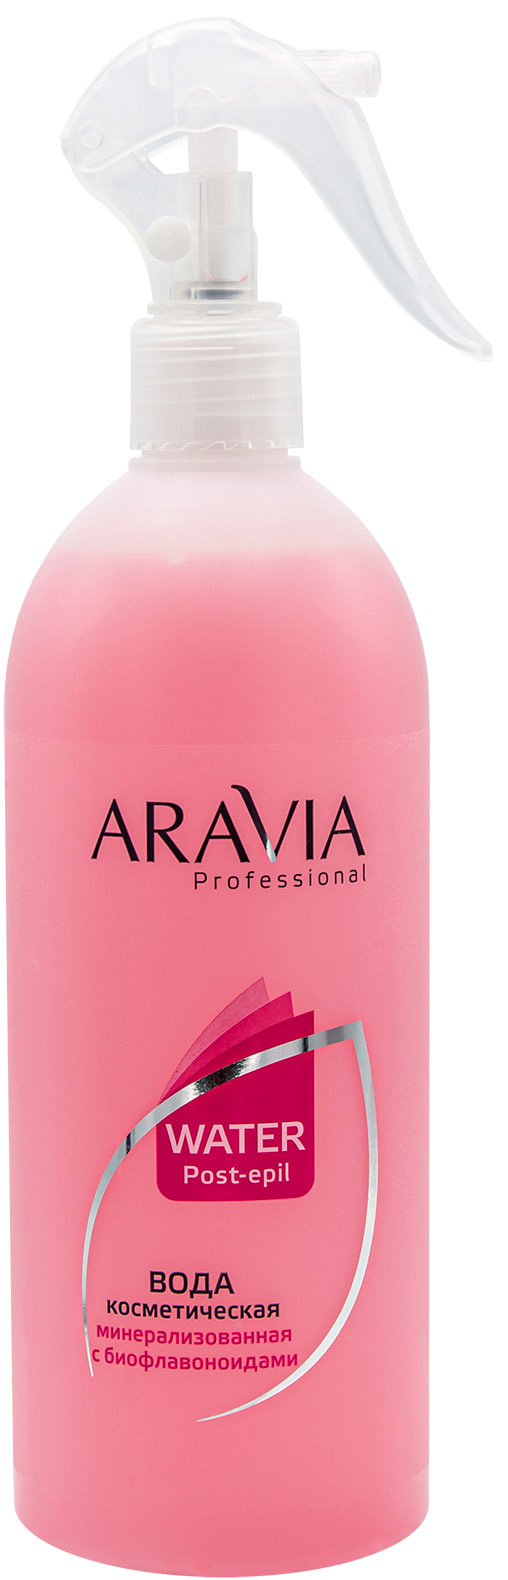 Aravia Professional Вода косметическая минерализованная с биофлавоноидами, 500 мл (Aravia Professional, Spa Депиляция)